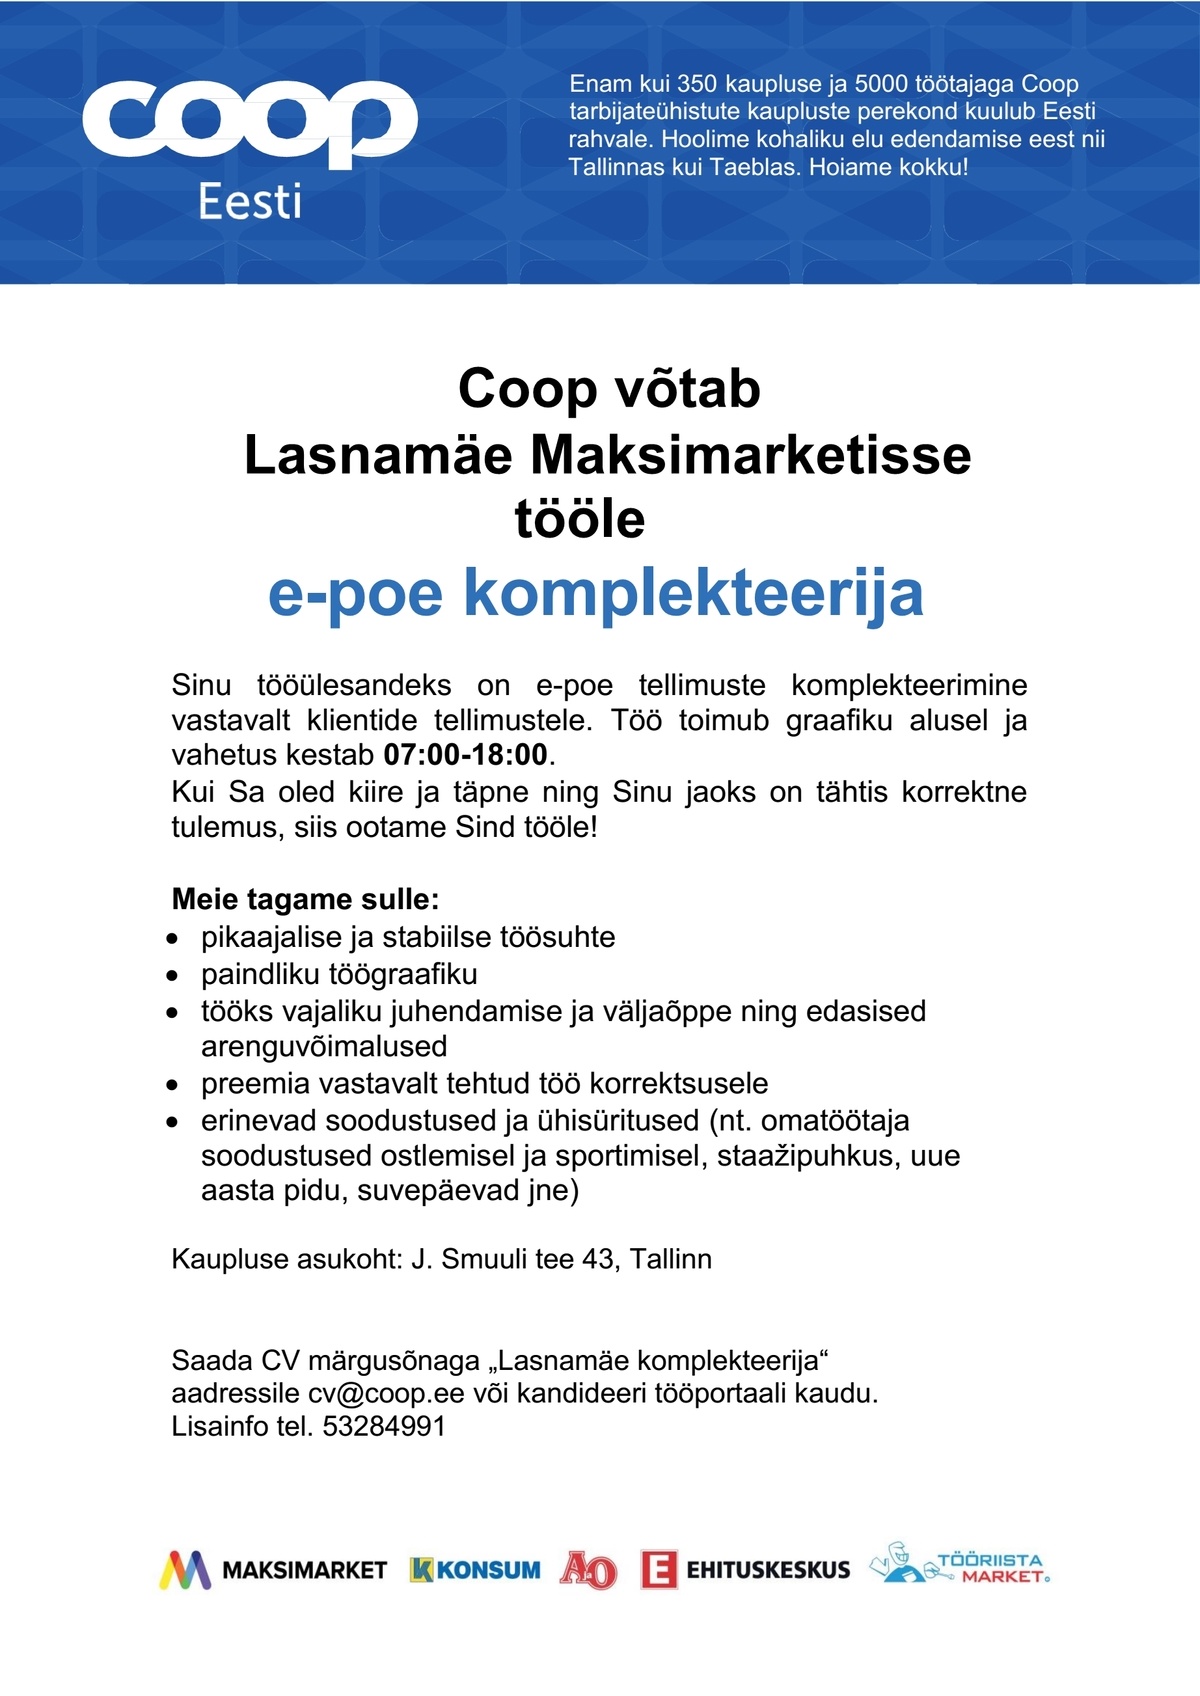 Coop Kaubanduse AS E-poe komplekteerija (Lasnamäe Maksimarket)